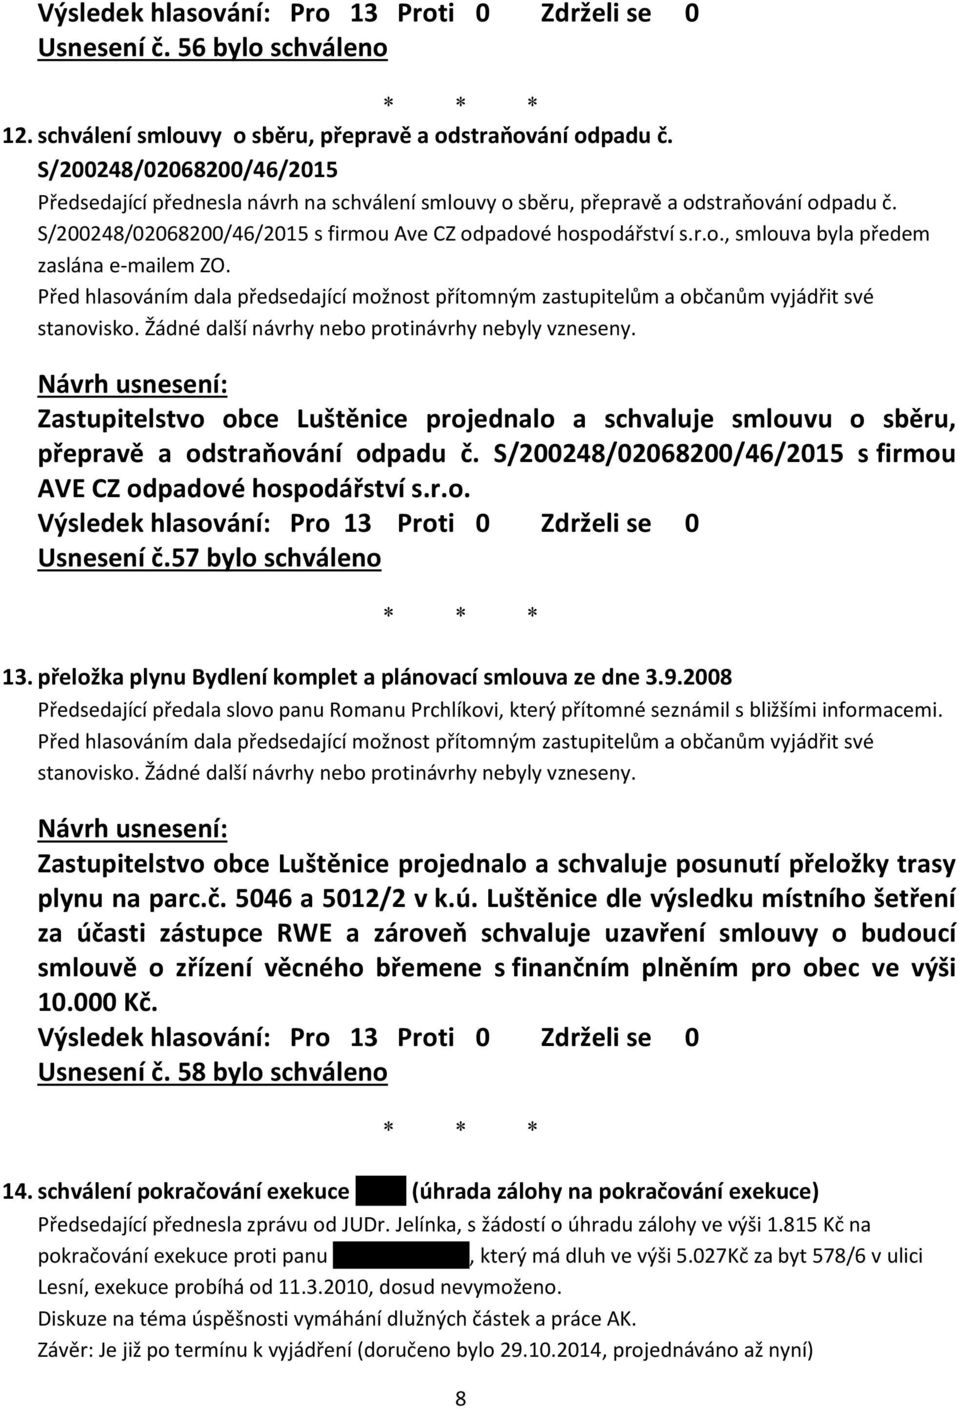 Zastupitelstvo obce Luštěnice projednalo a schvaluje smlouvu o sběru, přepravě a odstraňování odpadu č. S/200248/02068200/46/2015 s firmou AVE CZ odpadové hospodářství s.r.o. Usnesení č.